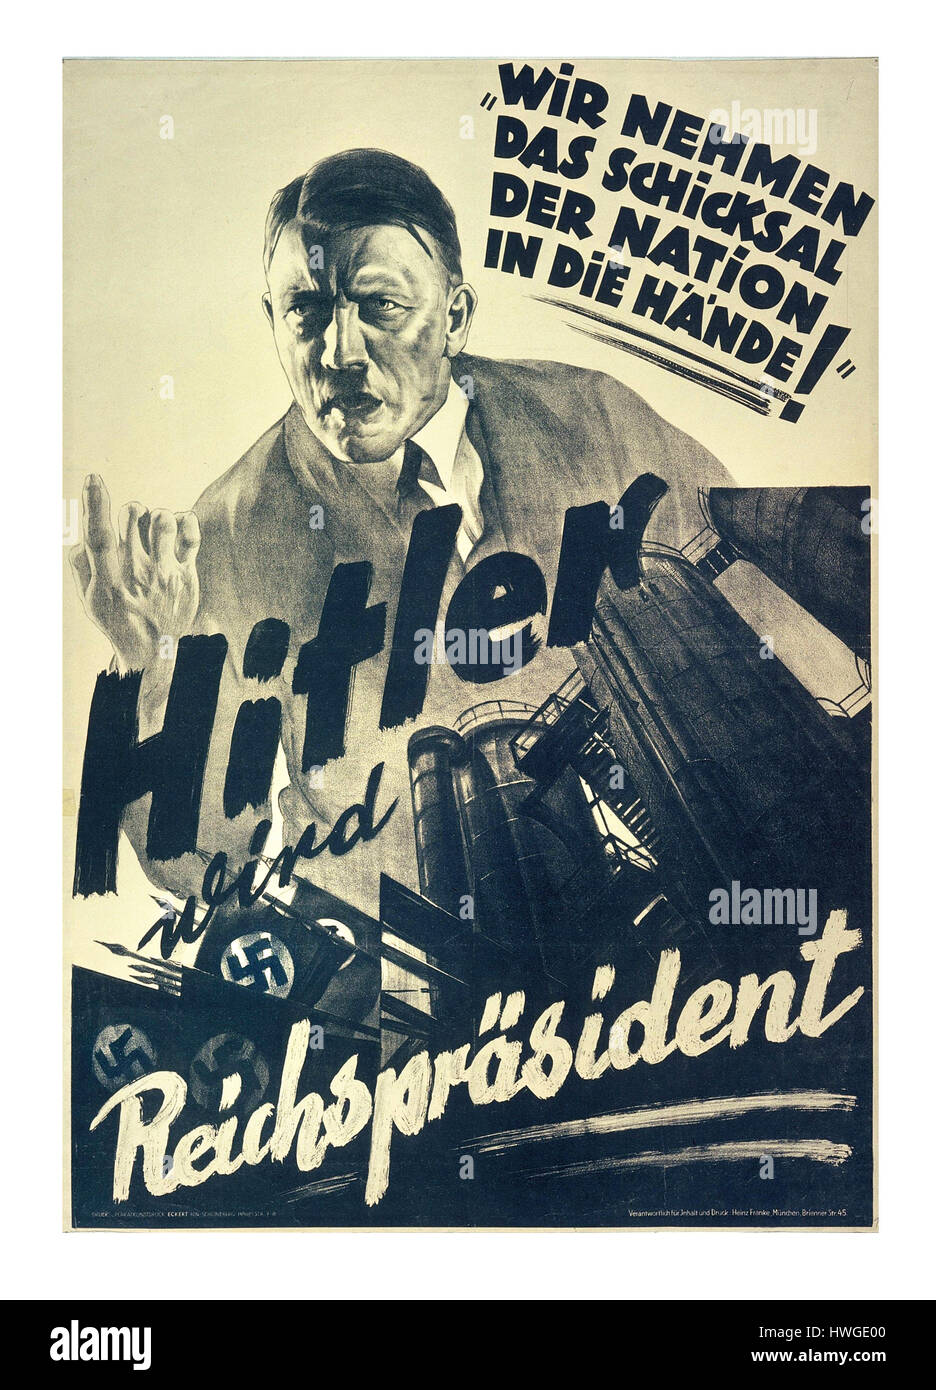 ADOLF HITLER die NSDAP aus der Zeit vor dem Krieg Wahl deutschen 30er Propaganda Poster mit Adolf Hitler als "Reichsprasident' heisst: "Wir nehmen das Schicksal der Nation in unsere Hand' Stockfoto